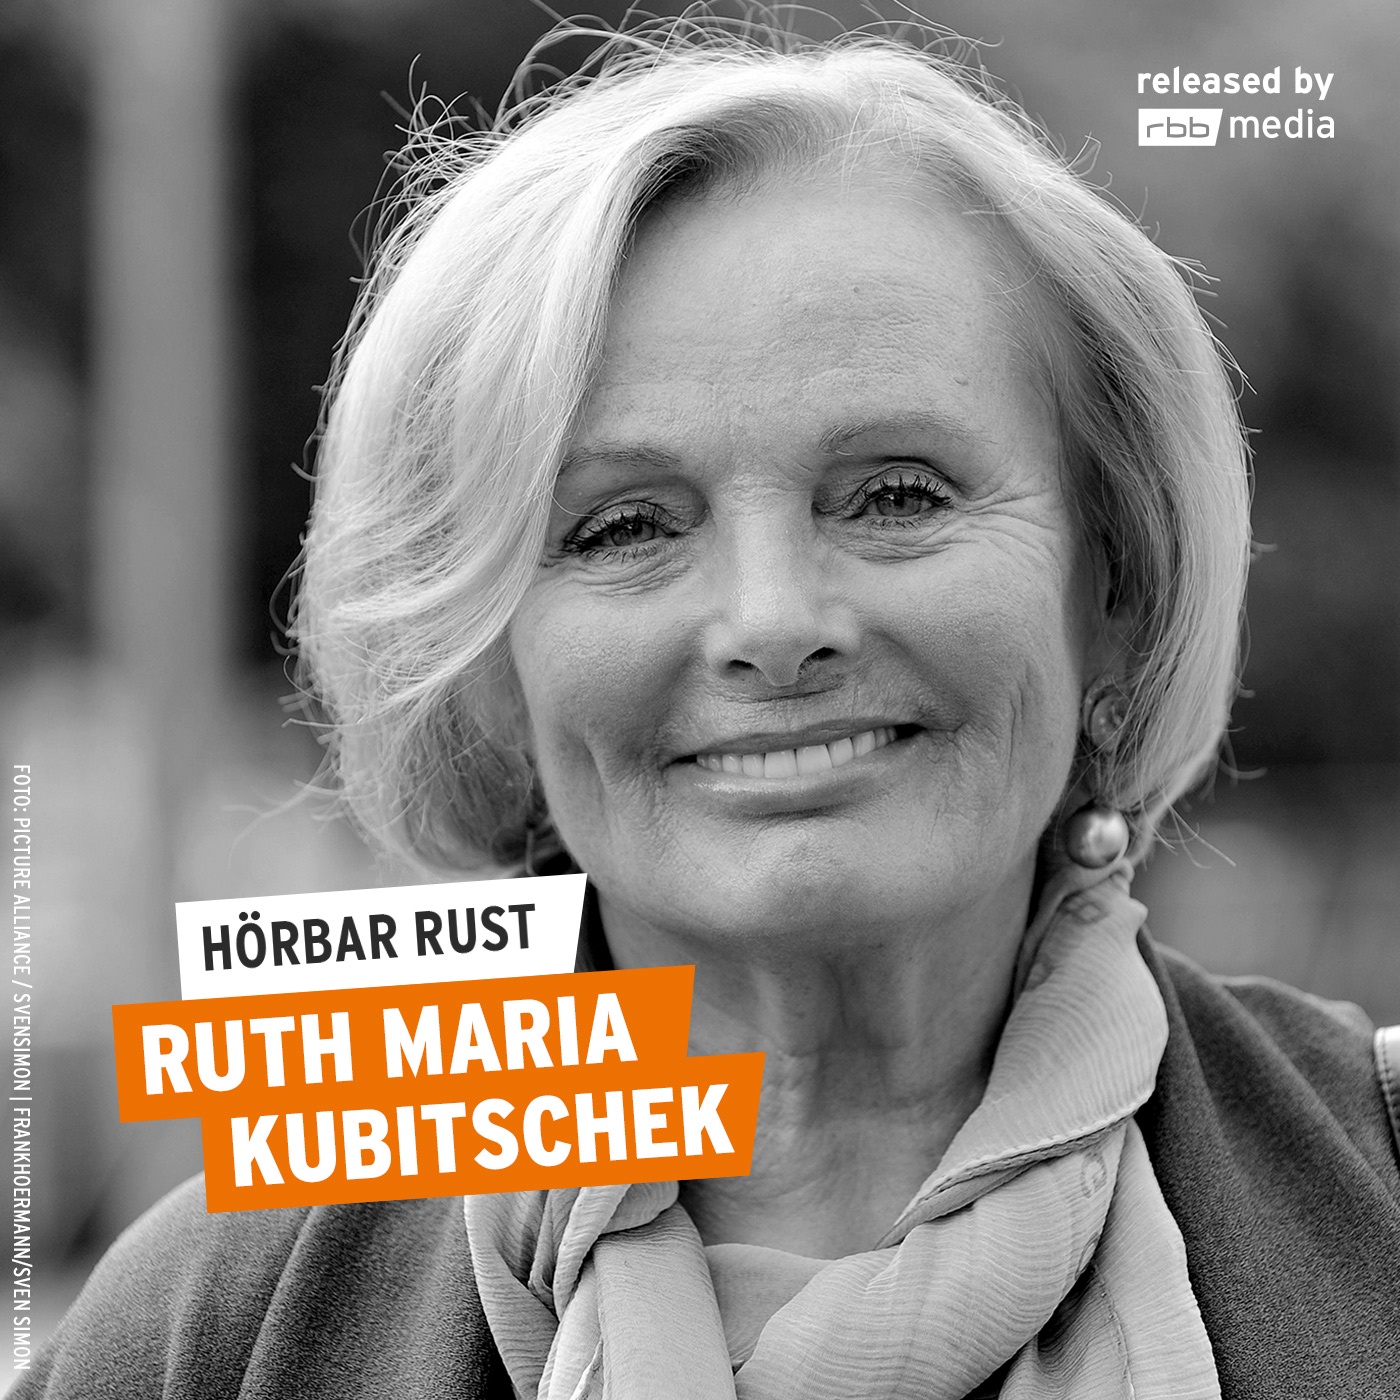 Ruth Maria Kubitschek (Wdh. vom 18.9.2011)